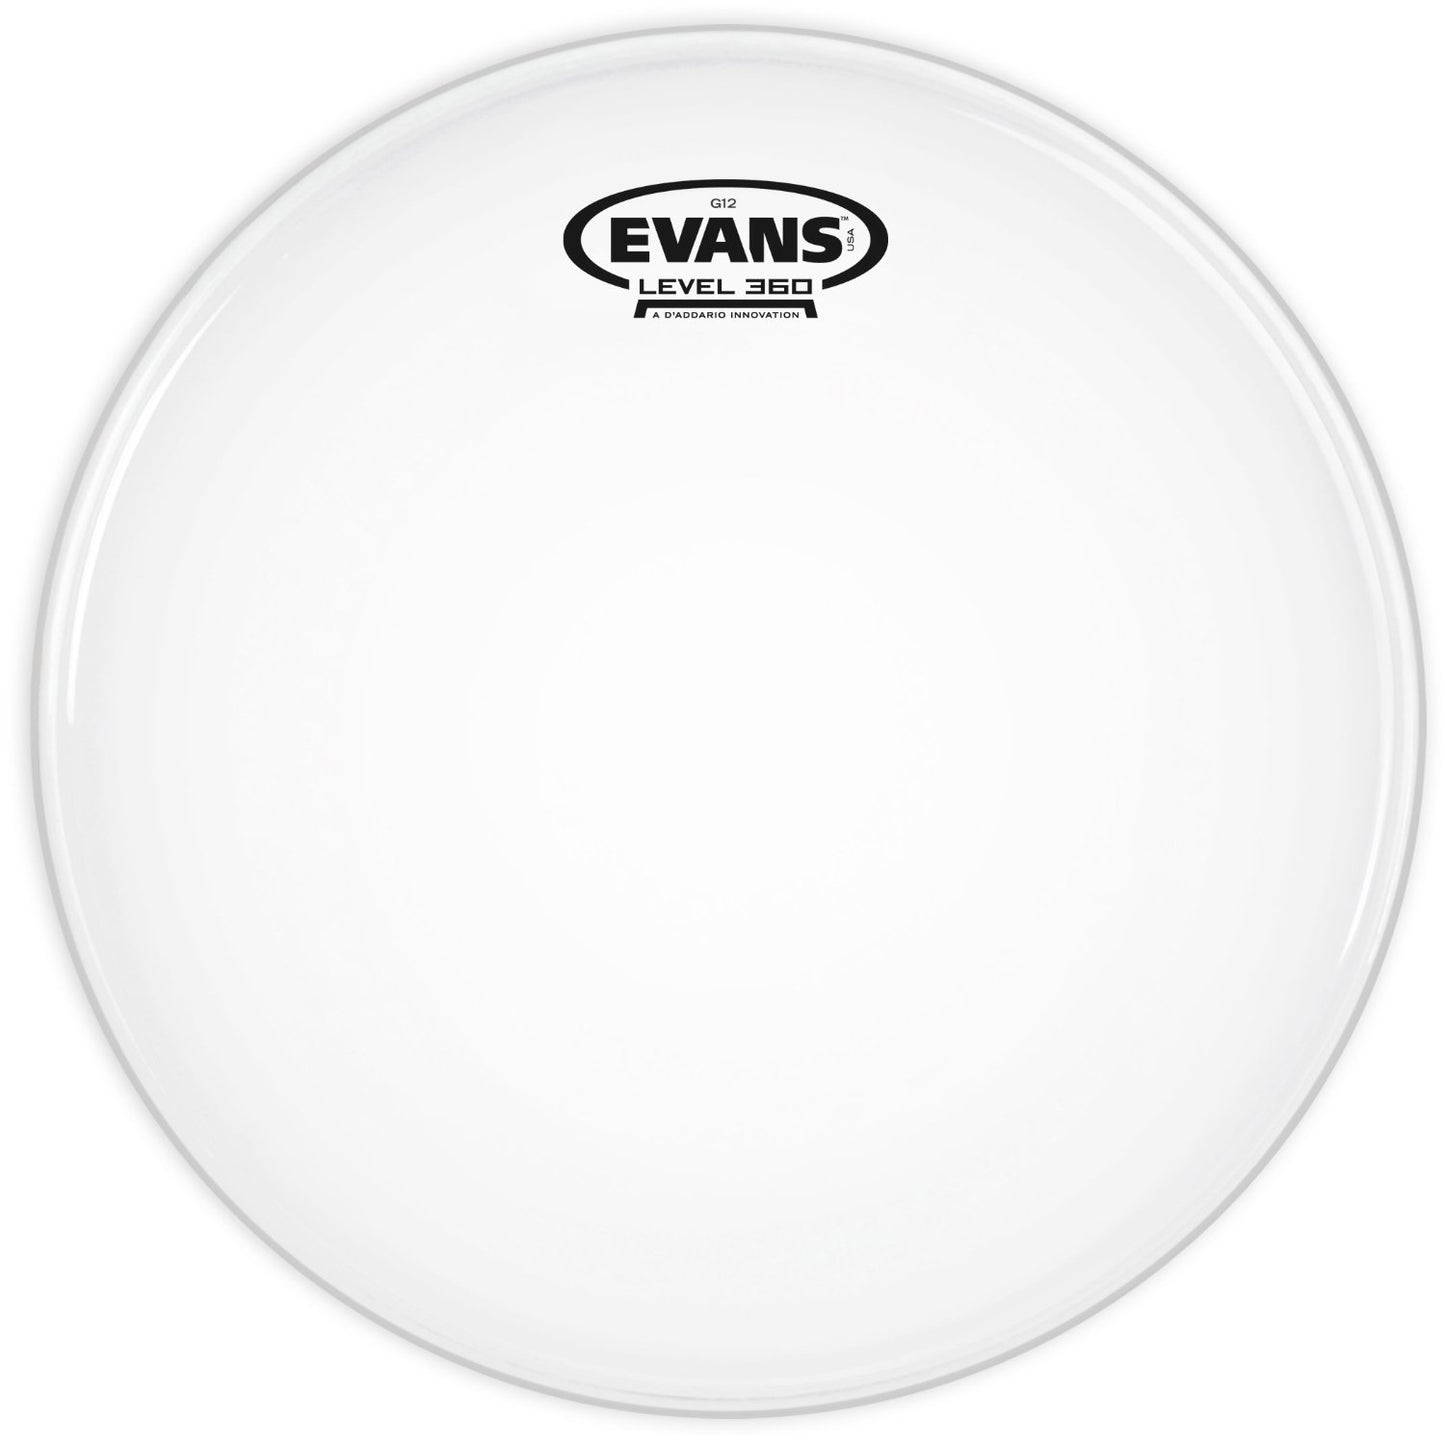 Evans B13G12 13" Coated G12 Drum Head